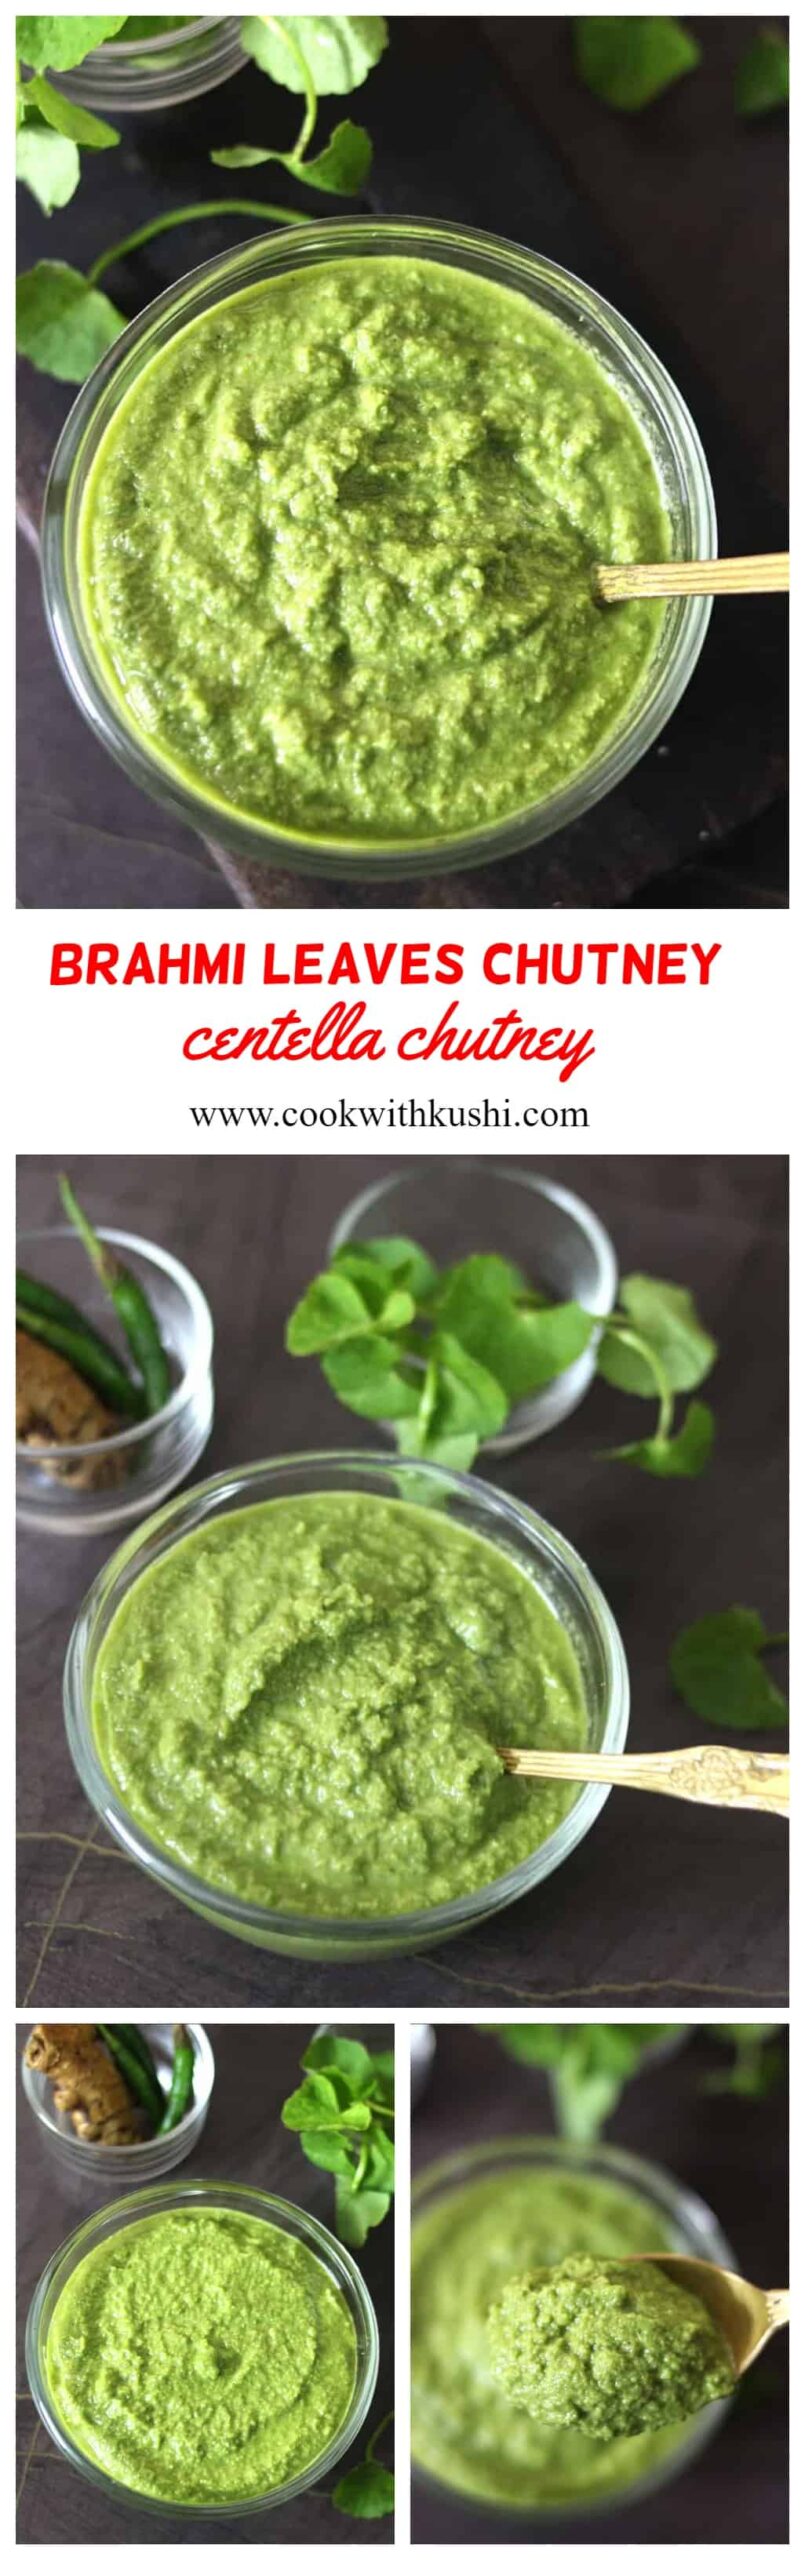 How to make brahmi leaves chutney #Ondelagasoppu #timare #ekpani